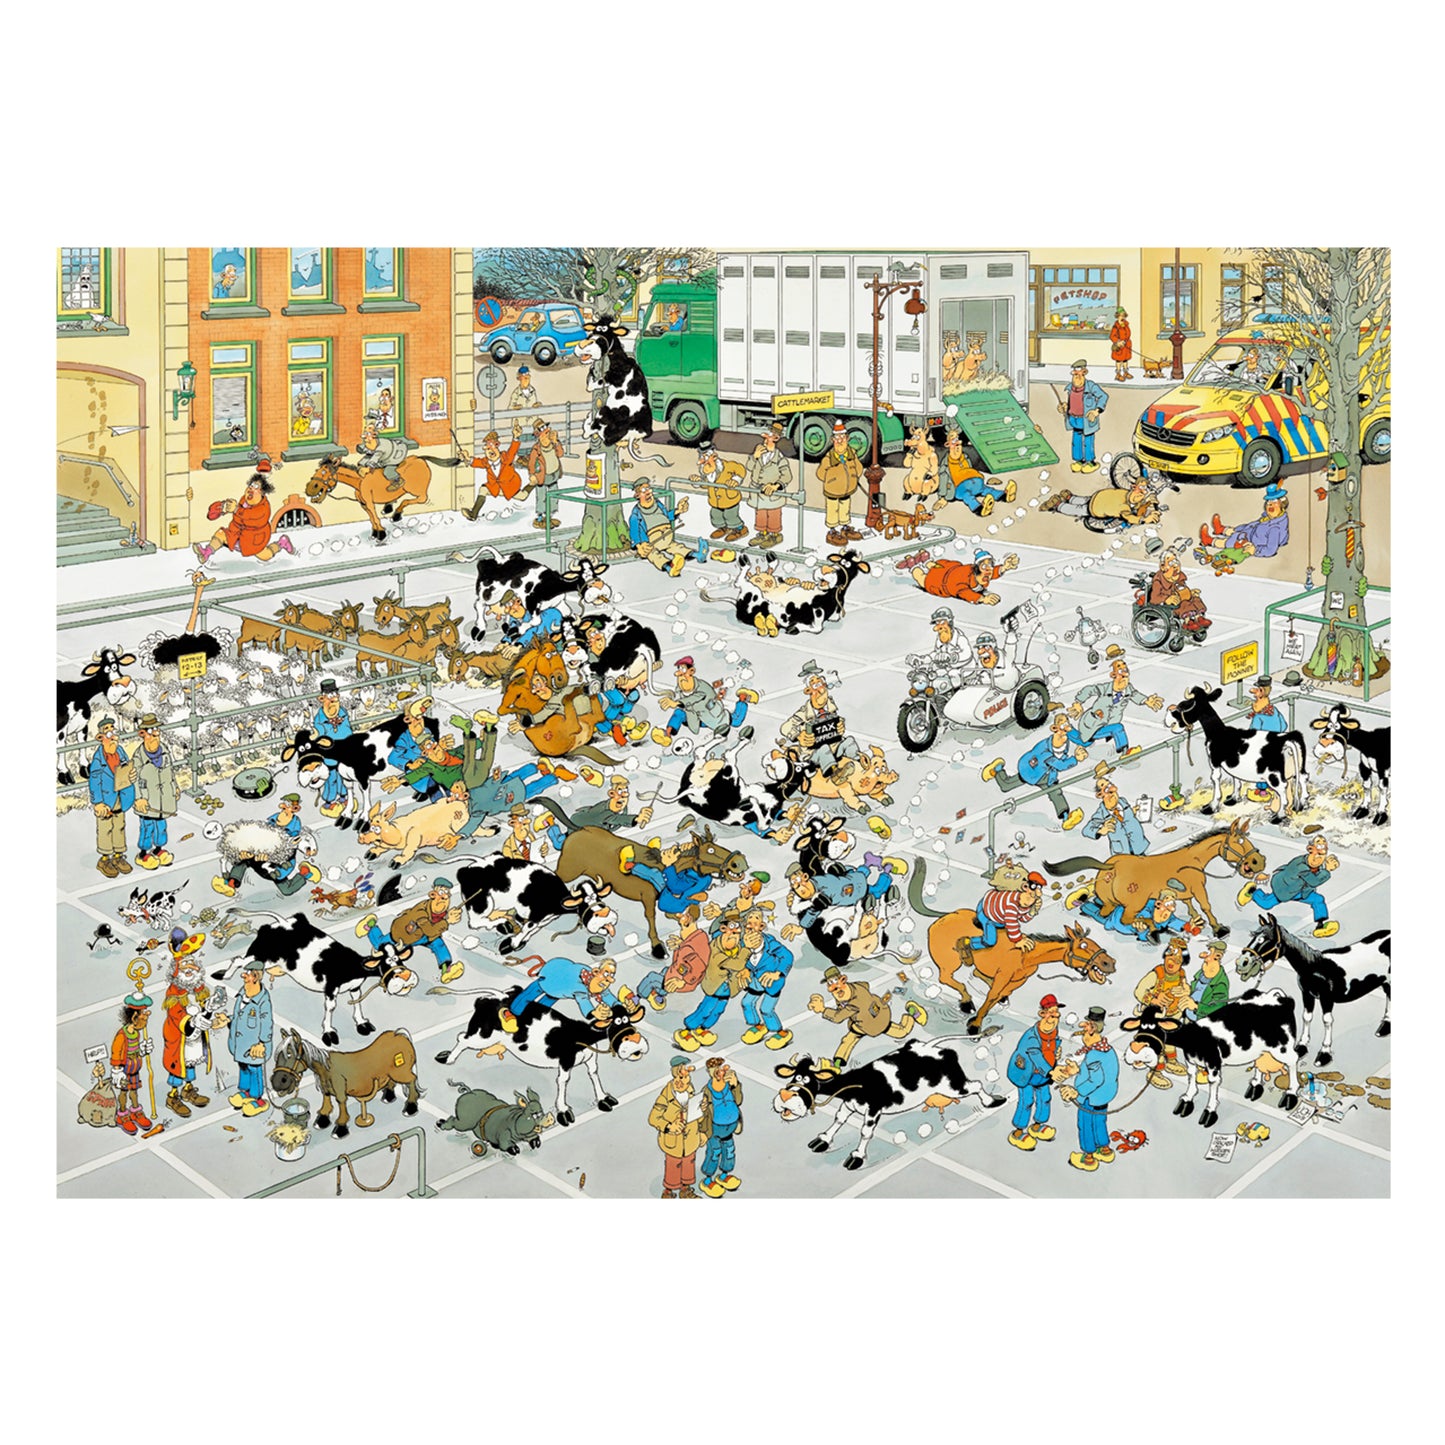 Jan van Haasteren - The Cattle Market (1000 pieces) - product image - Jumboplay.com